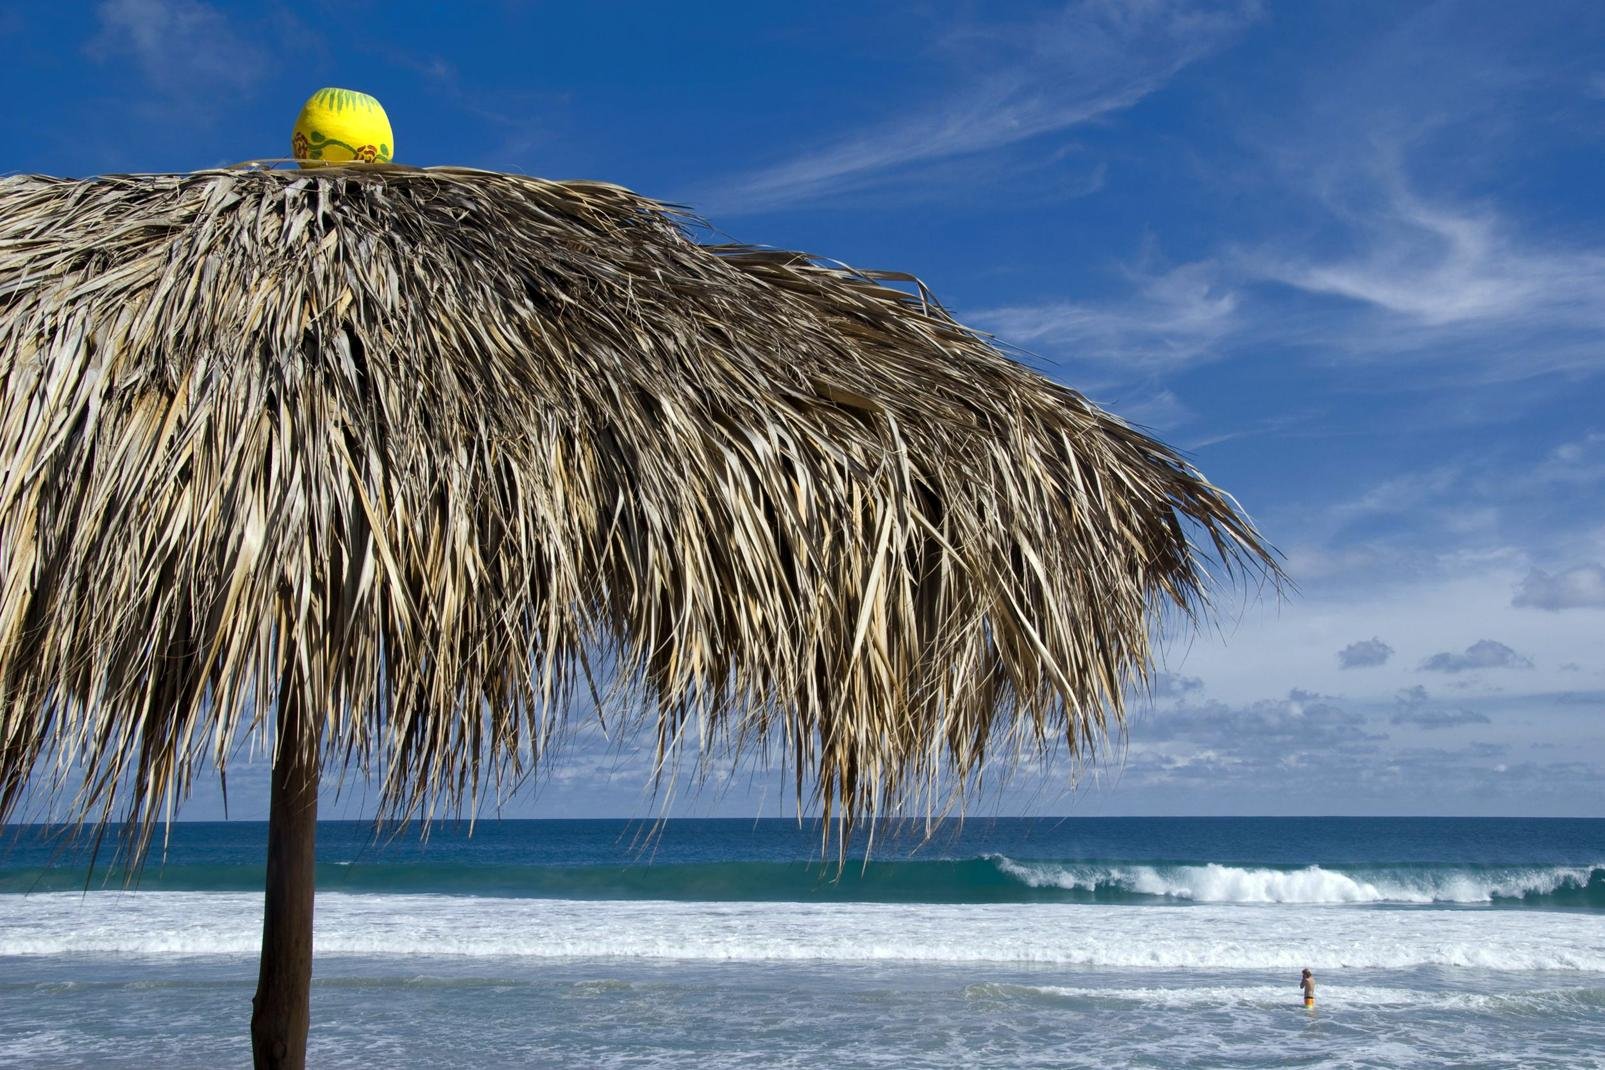 Puerto Escondido es un puerto encantador del estado de Oaxaca en México. Se sitúa a unos 800 kilómetros al Sur oeste de la capital México Ciudad y es famoso por ser un autentico paraíso para los surfistas. Un sinfín de ellos buscan las olas allí. Hay que saber que la playa principal del pueblo goza de olas impresionante que pueden llegar a medir más de 8 metros de alturas. 
Según la leyenda, el pueblo ...